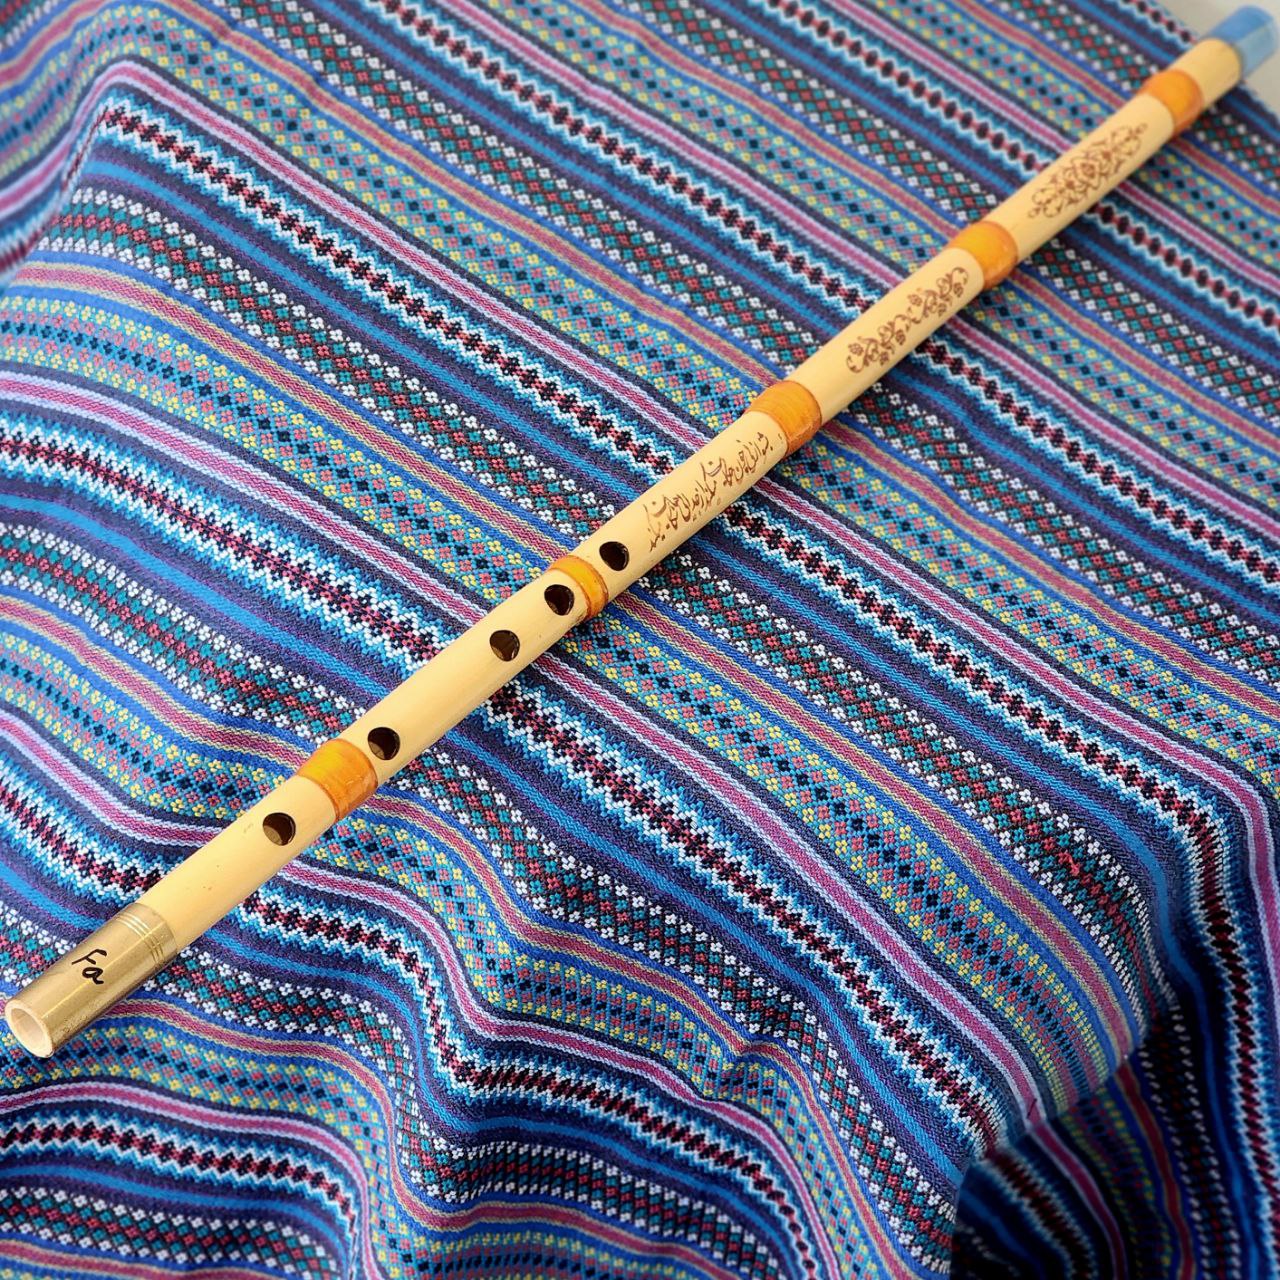 Persian flute